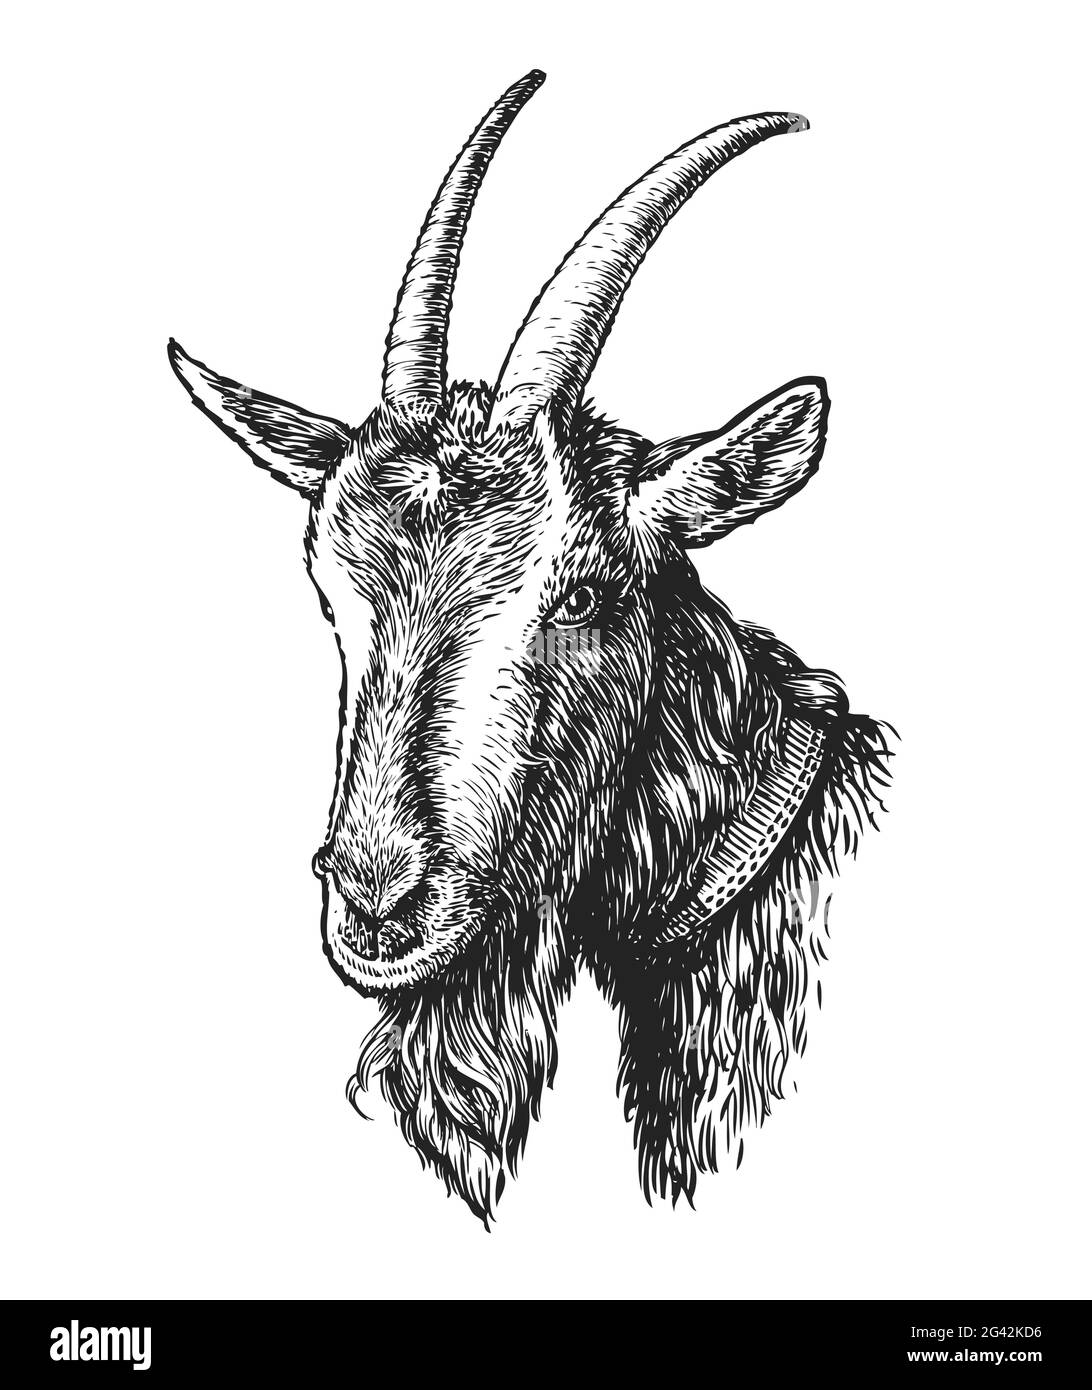 Dessiner à la main la tête de chèvre. Animal de ferme dans le style de gravure vintage. Illustration vectorielle Illustration de Vecteur